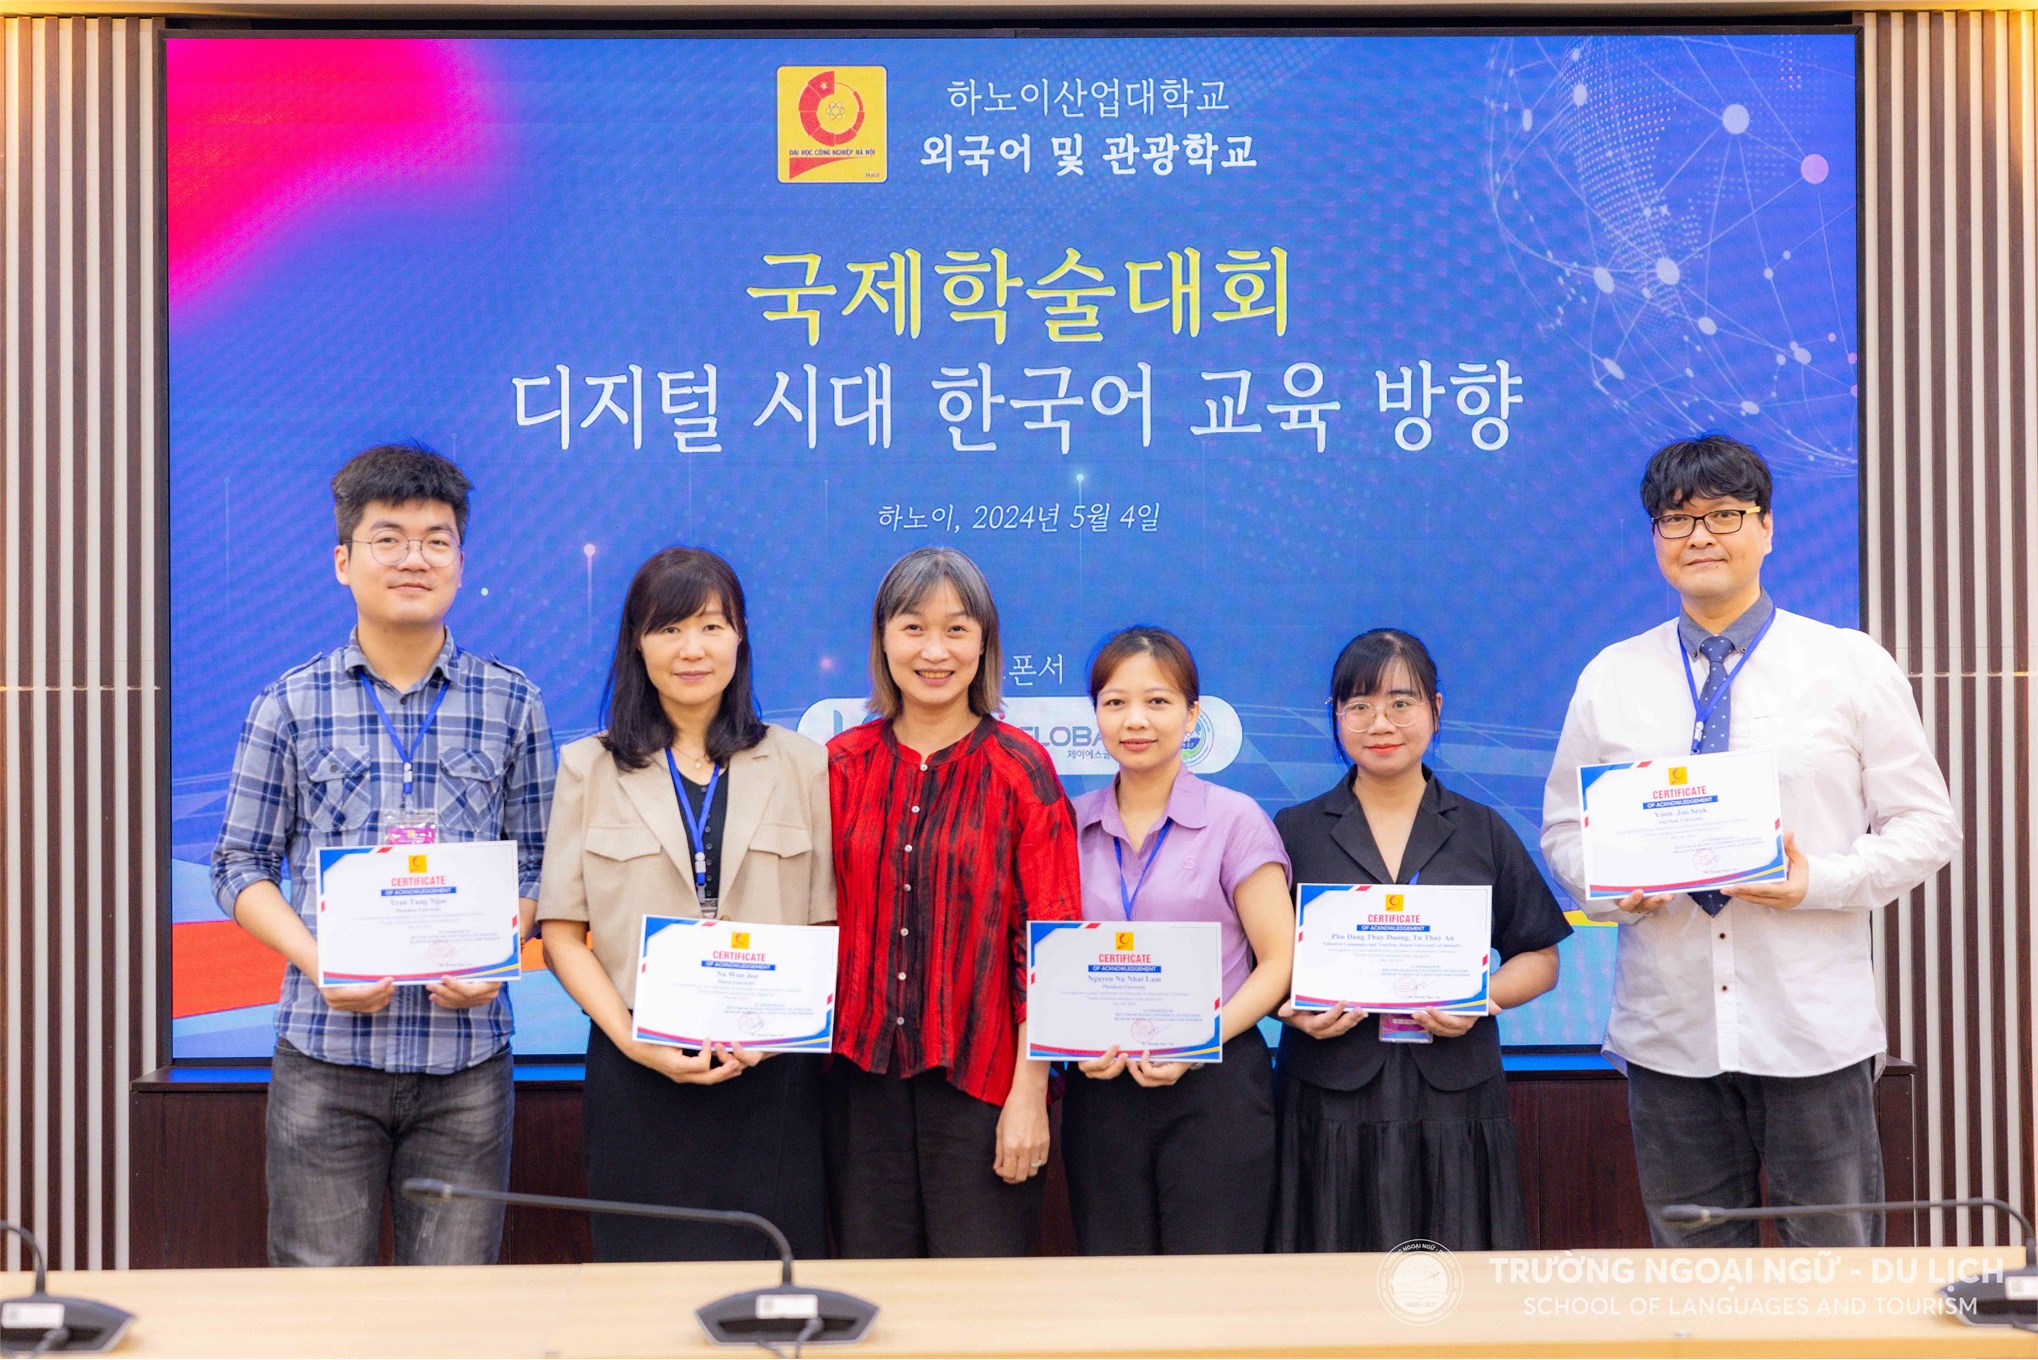 Hội thảo khoa học quốc tế “Xu hướng đào tạo tiếng Hàn Quốc trong thời đại số”